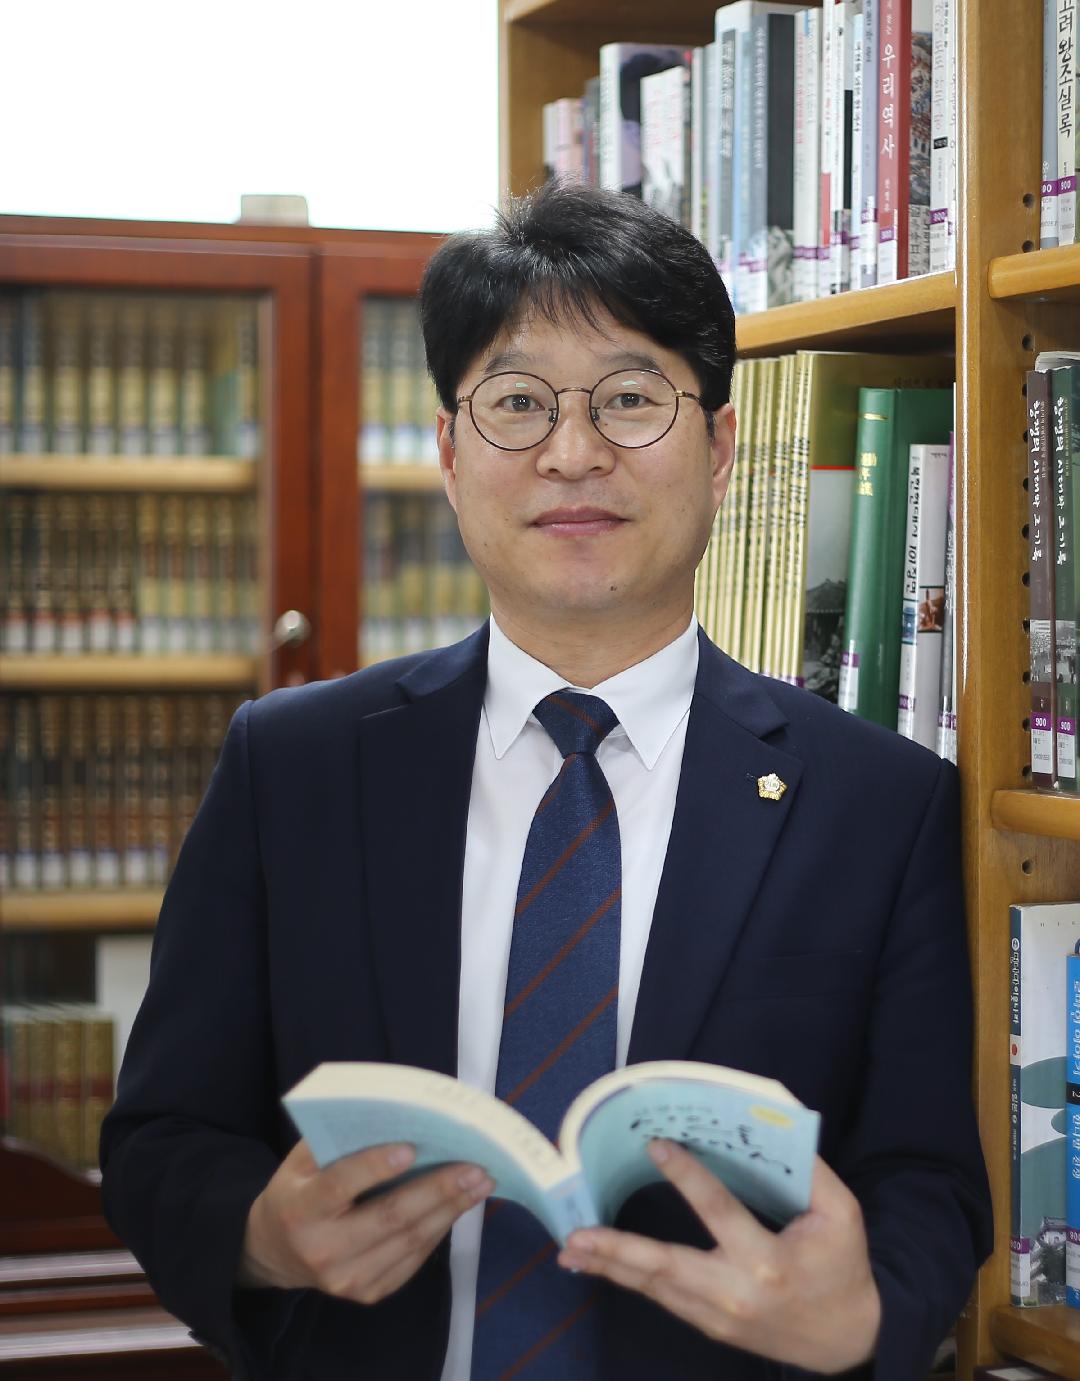 창원시의회 이우완 의원, 2019 청소년희망대상 수상자로 선정1